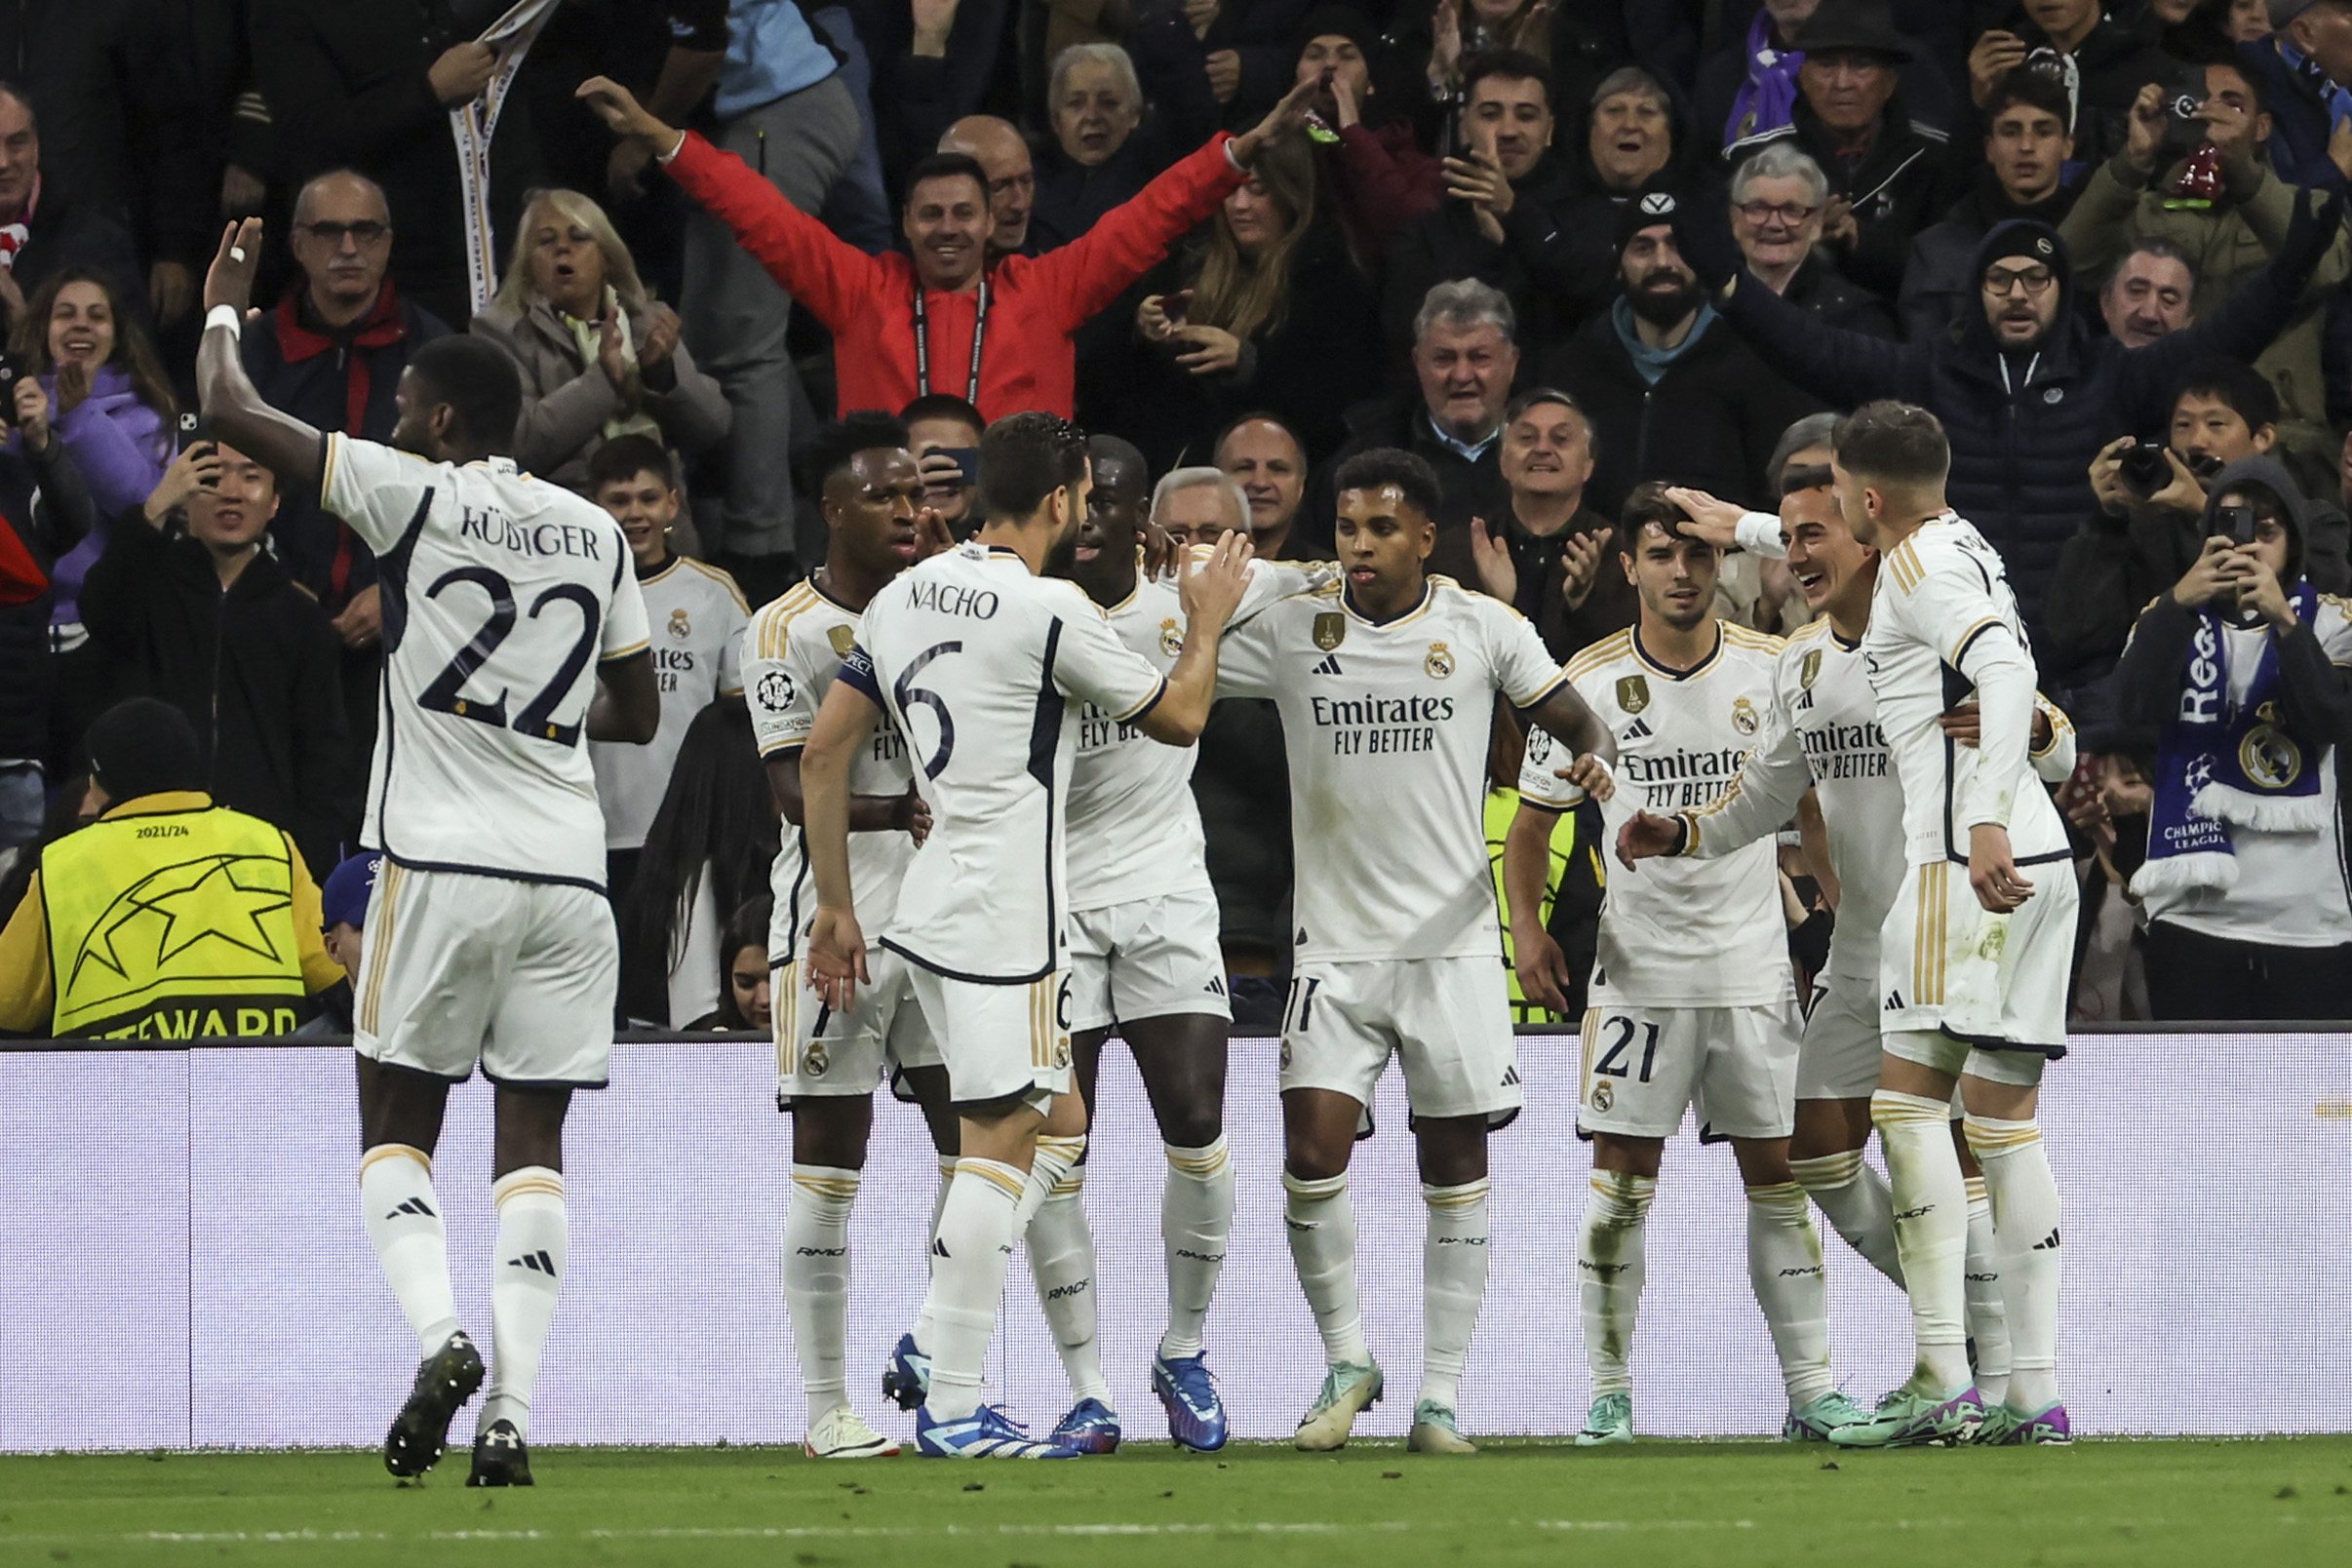 El Real Madrid golea al Braga (3-0) y se clasifica para los octavos de la Champions League